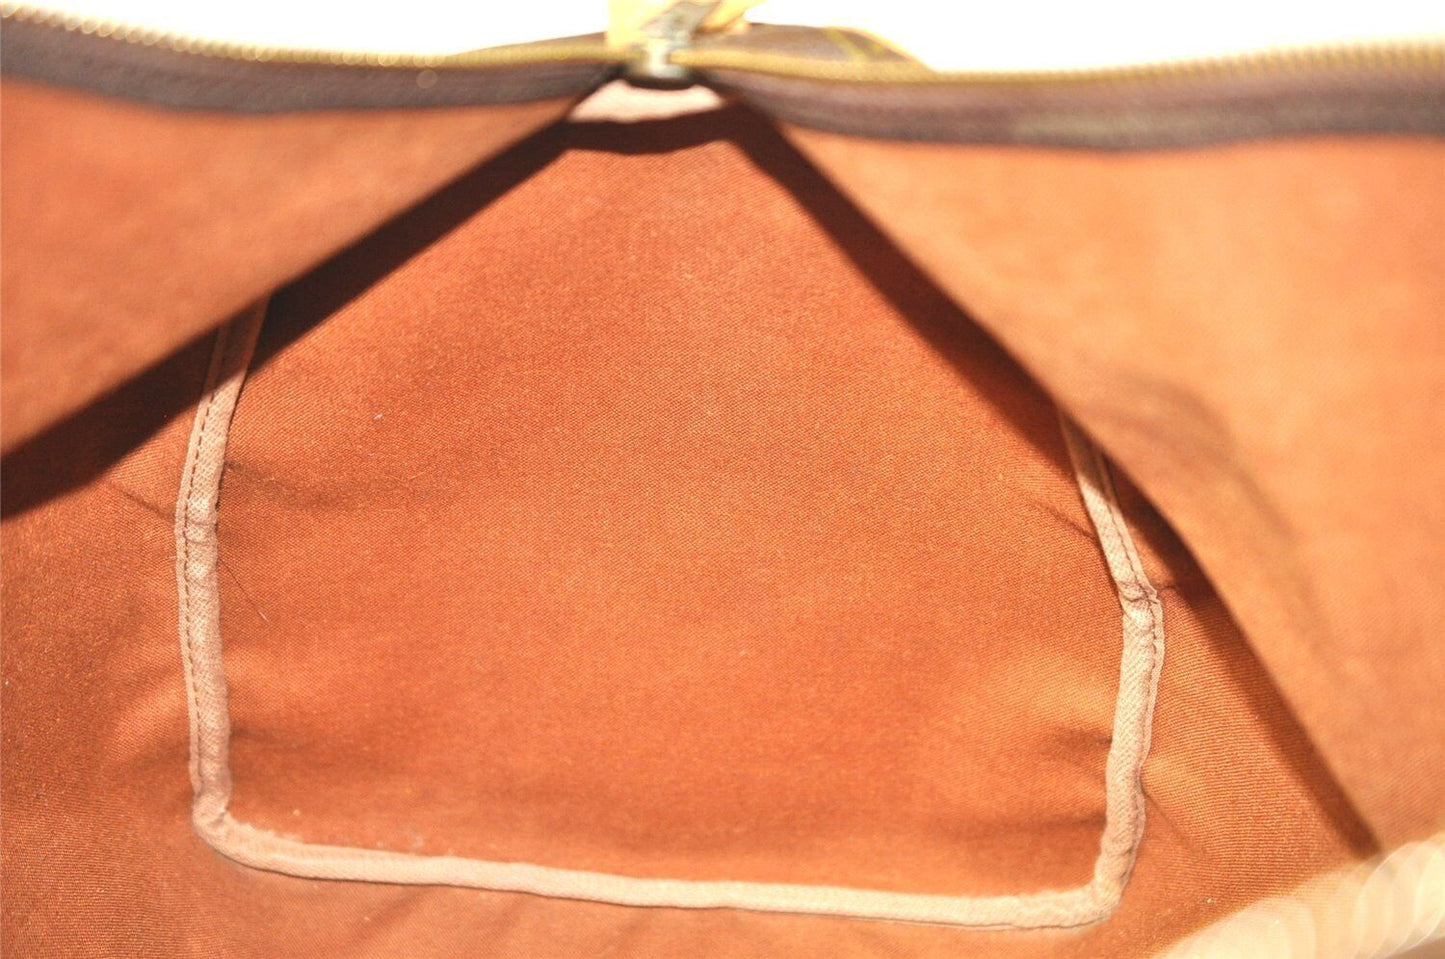 Original/Auth Louis Vuitton - Keepall 55 Boston Tasche - Klassisch - Monogramm